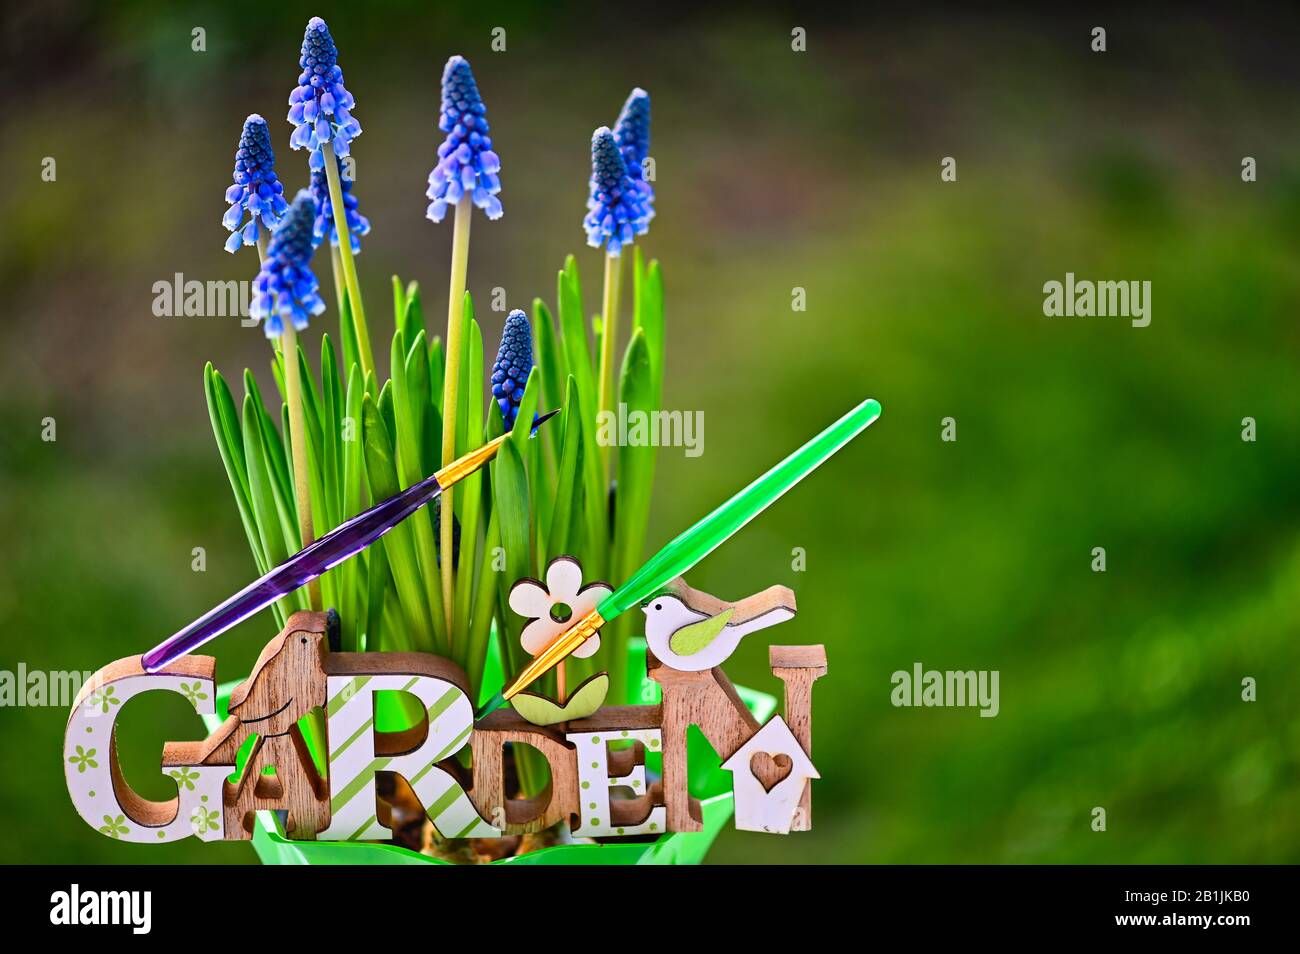 Panneau en bois avec le jardin de texte devant les hyacinthes de raisin pourpre au soleil. Deux formes colorées symbolisent les couleurs fortes de la nature. Banque D'Images